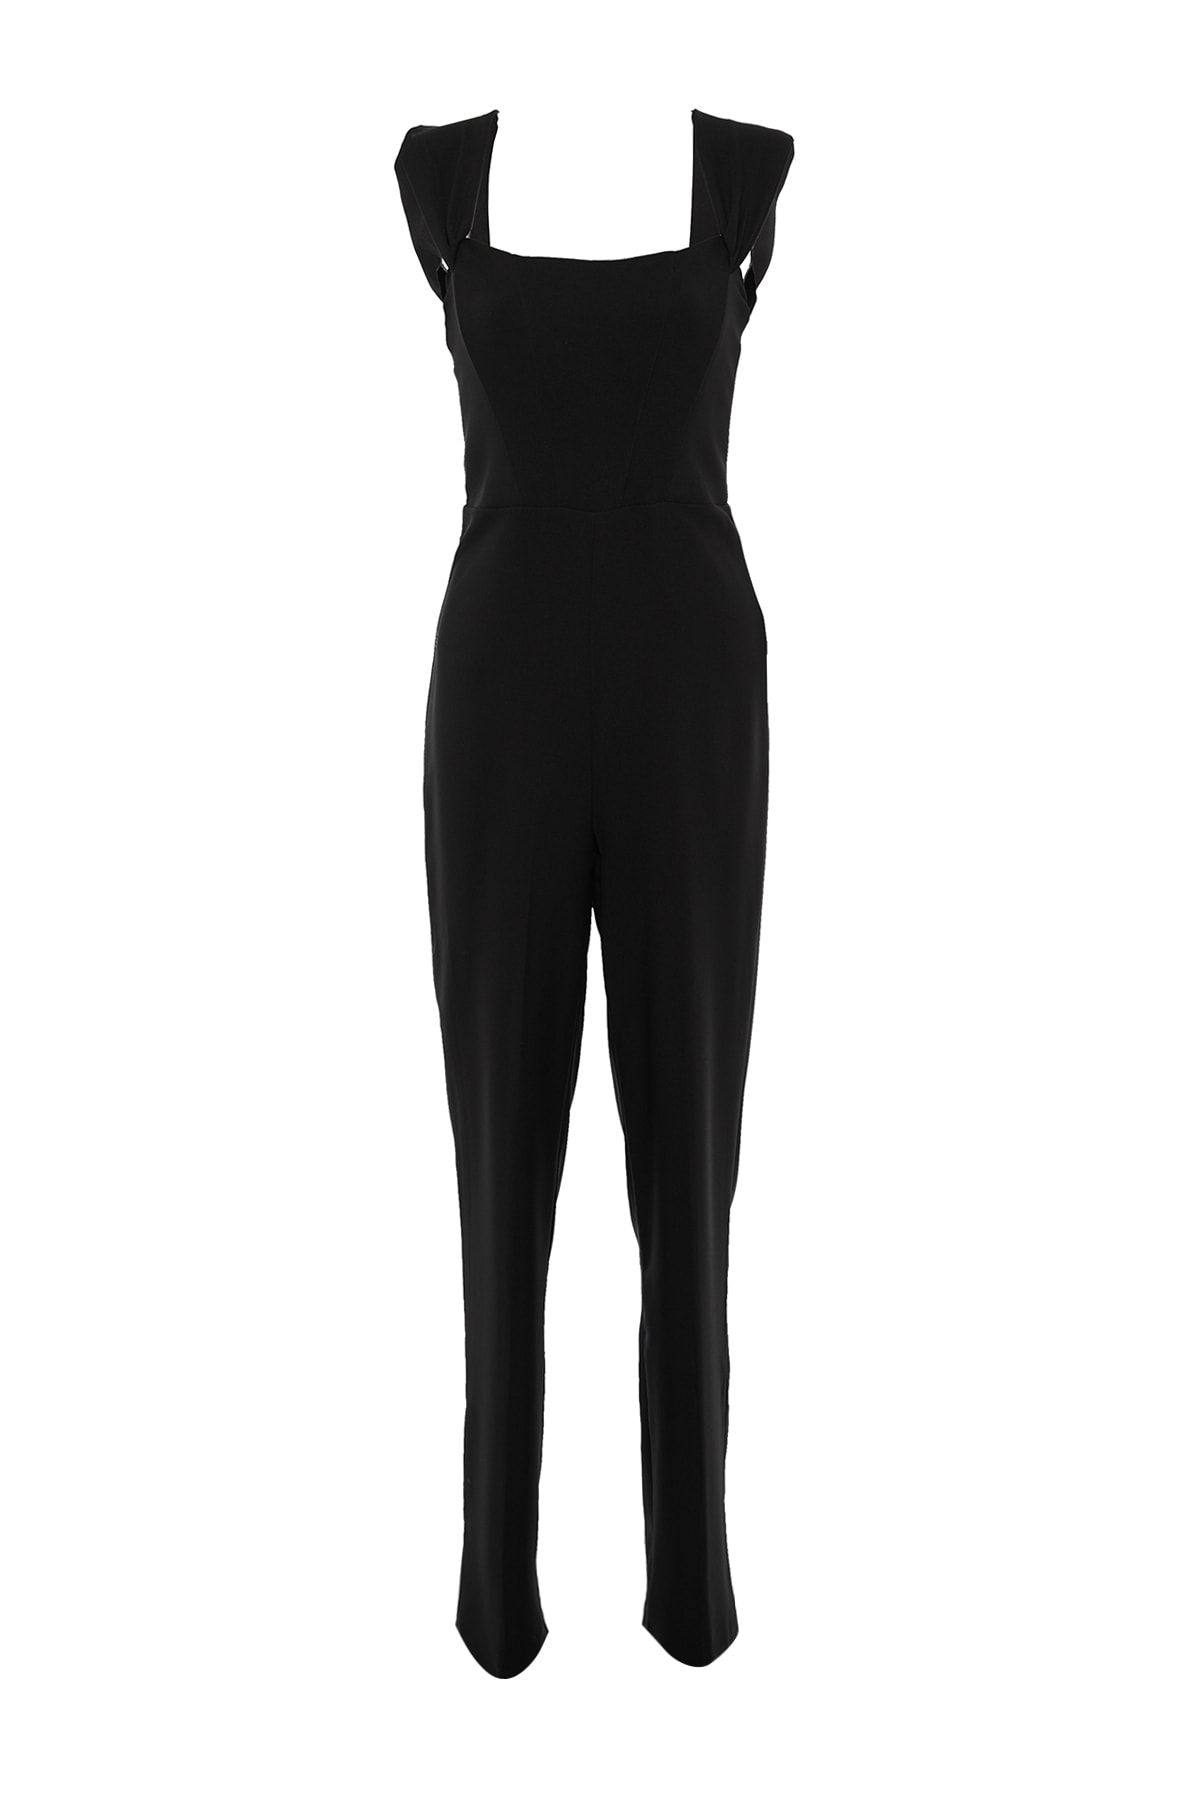 Trendyol Collection Jumpsuit - Black - Regular fit - Trendyol